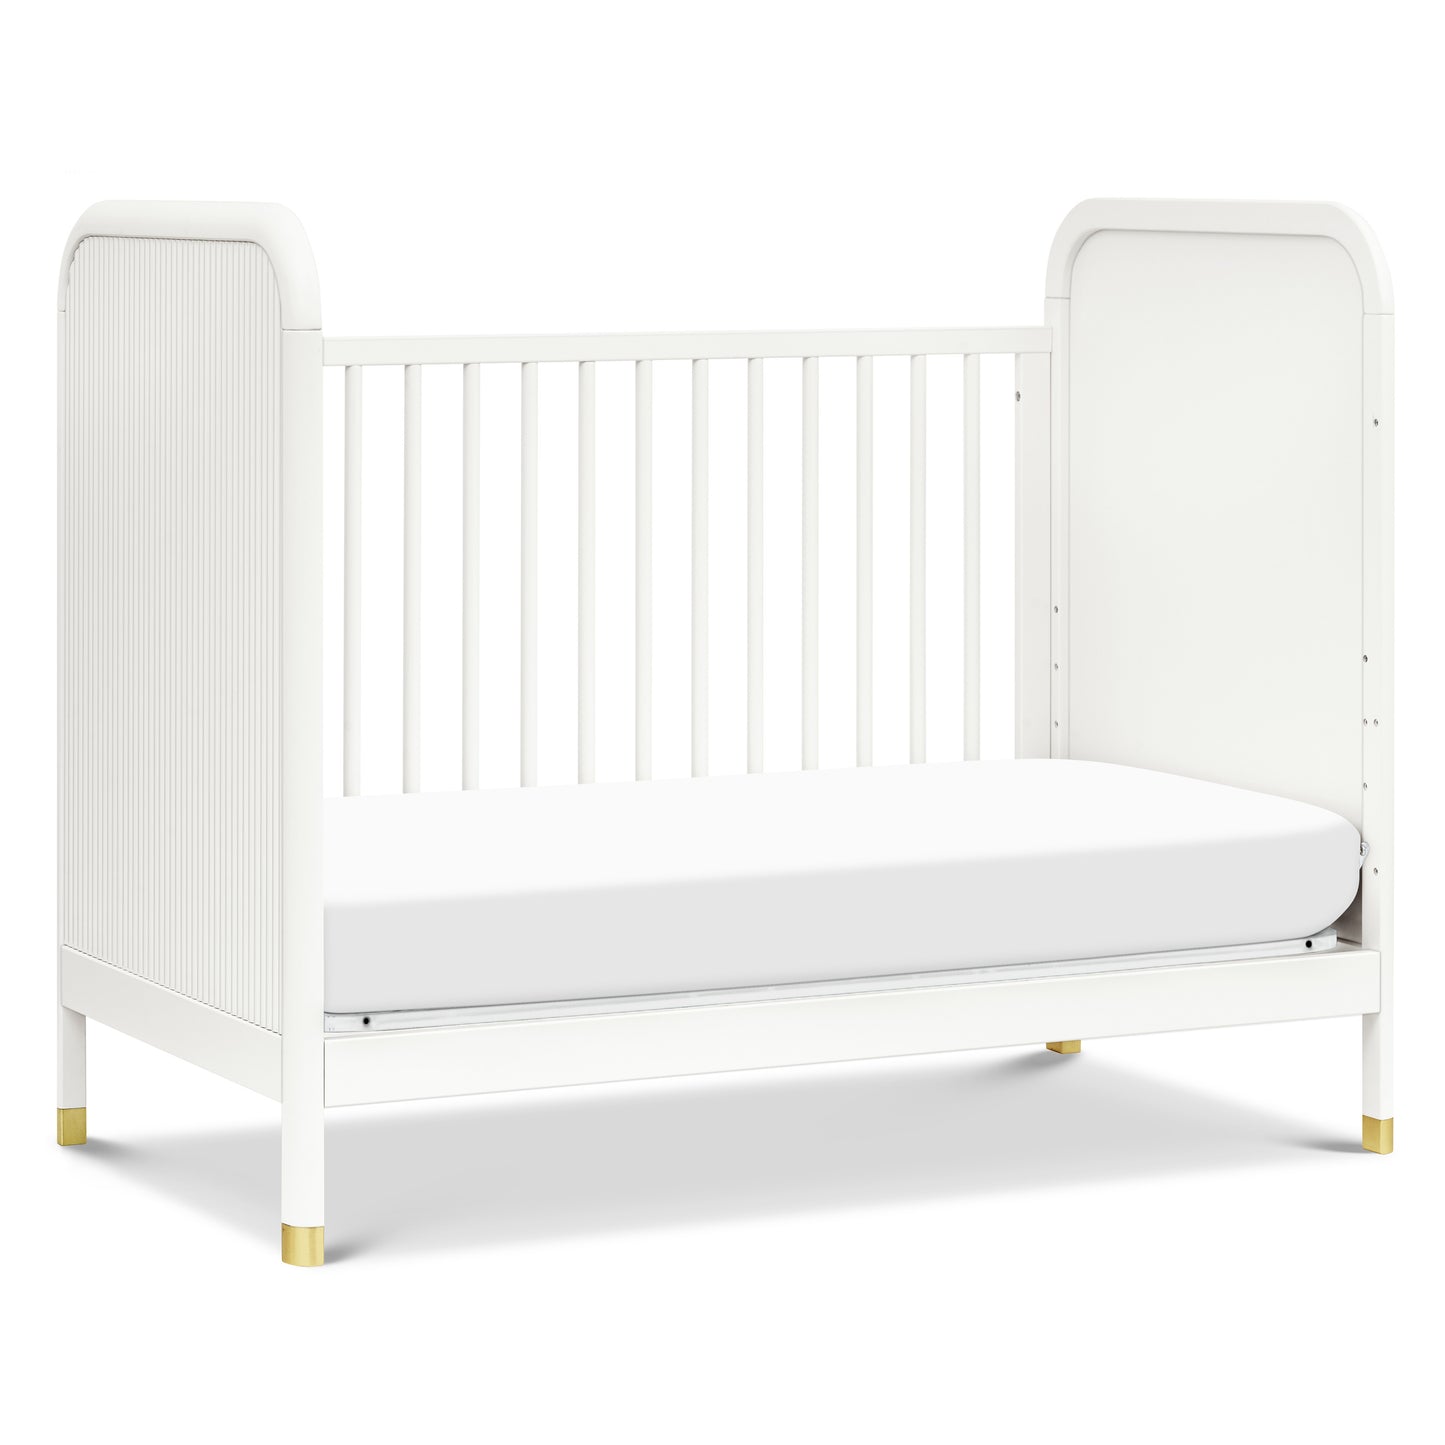 M26742RW,Brimsley Tambour 3-in-1 Convertible Crib in Warm White